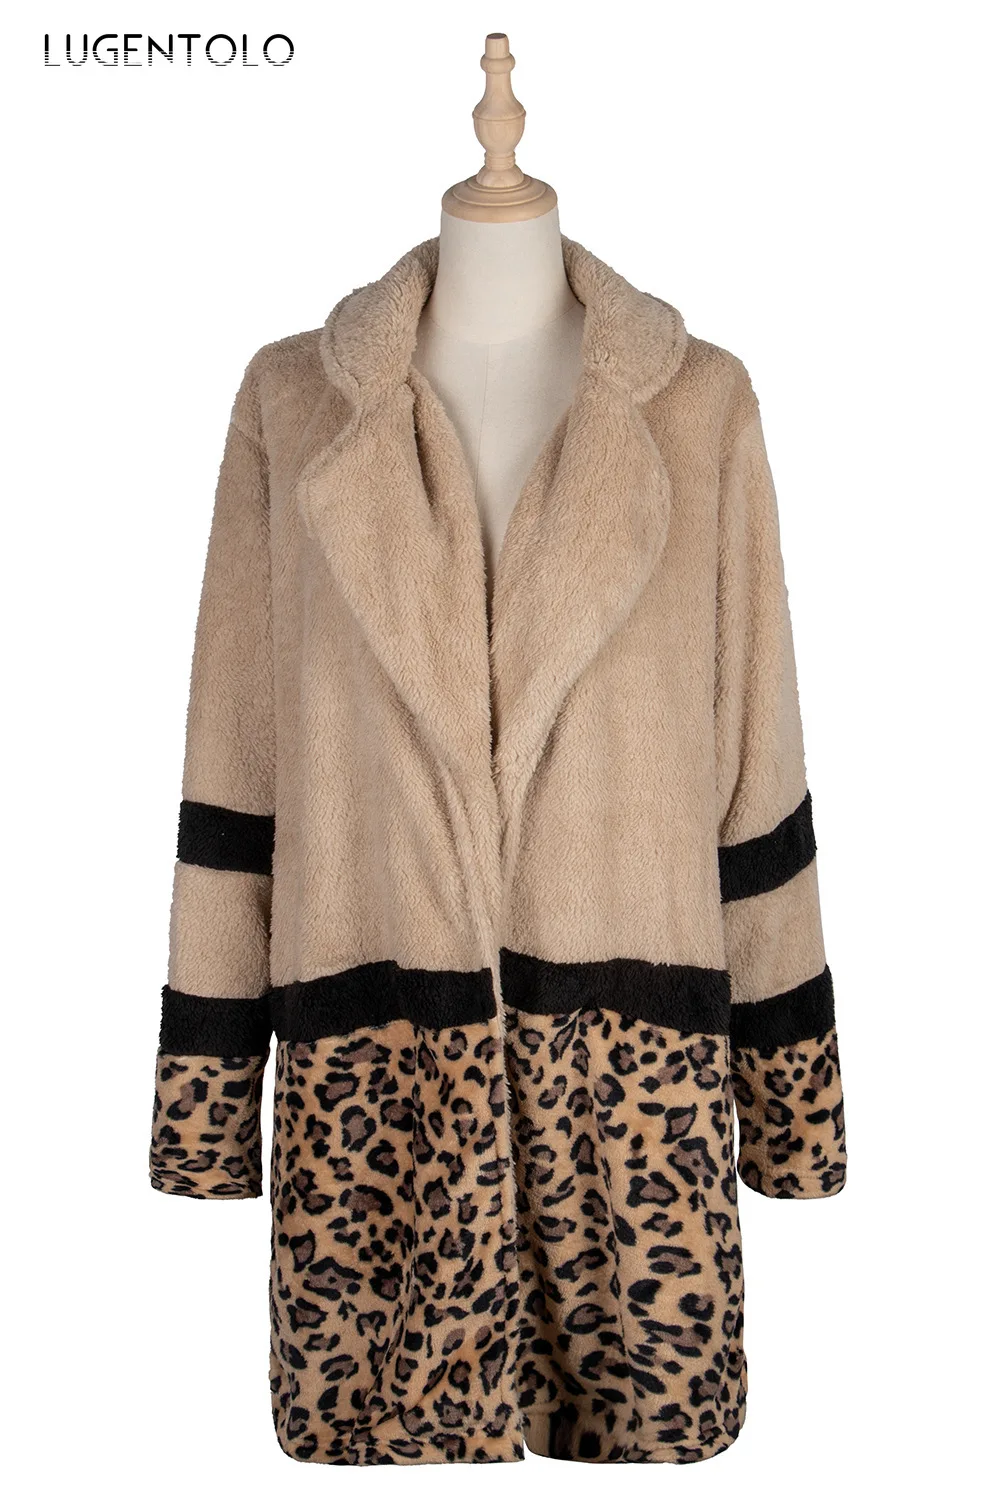 

Lugentolo Women's Coat Flocking Fashion New Autumn Winter Jackets Mid-Length Plush Coat Leopard Stitching Female Casual Coats